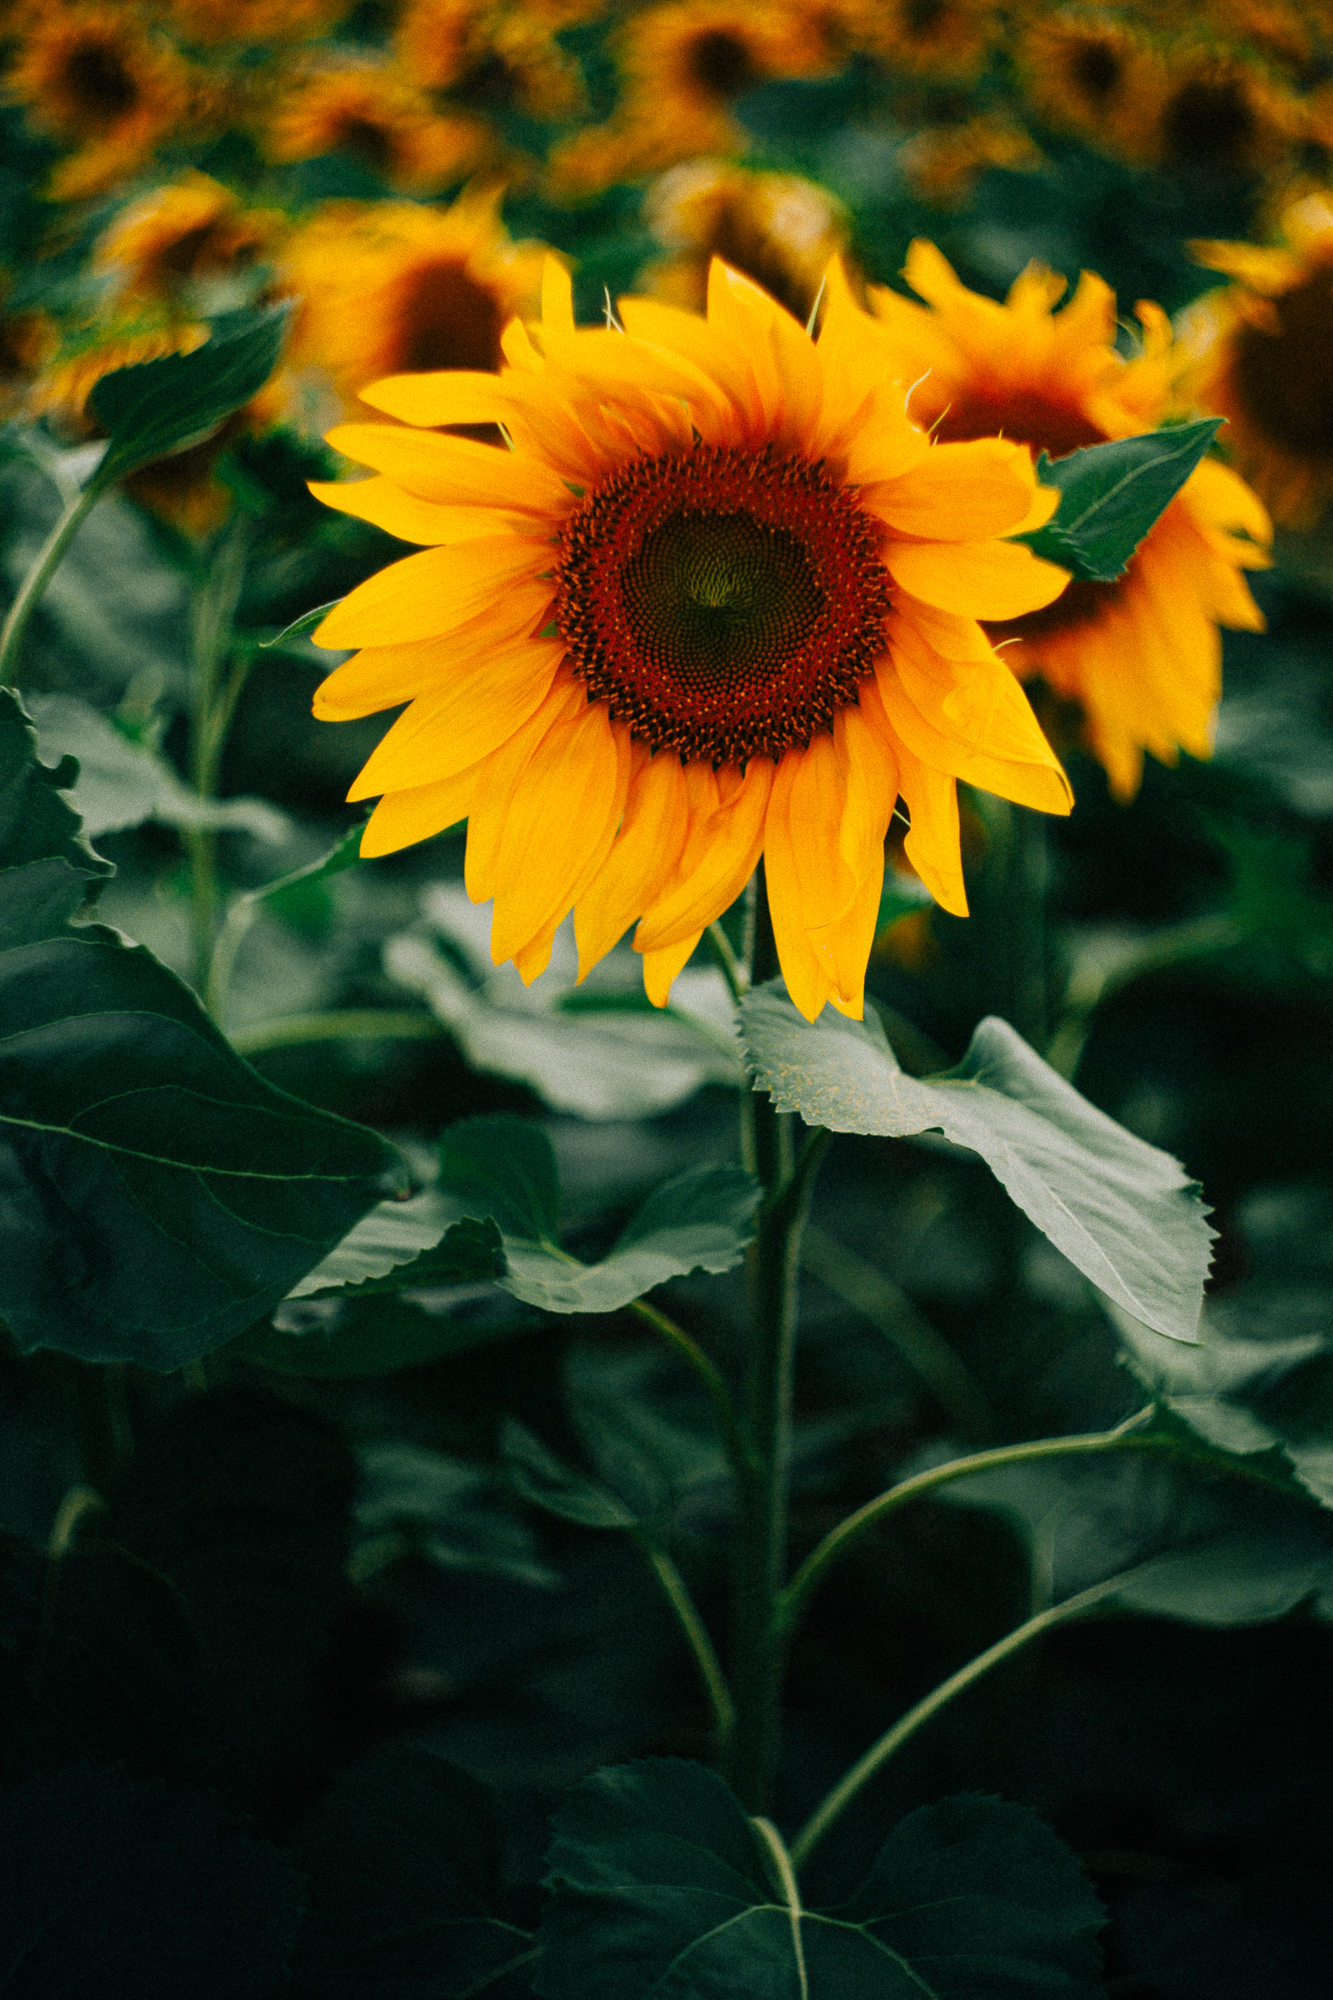 a big sunflower